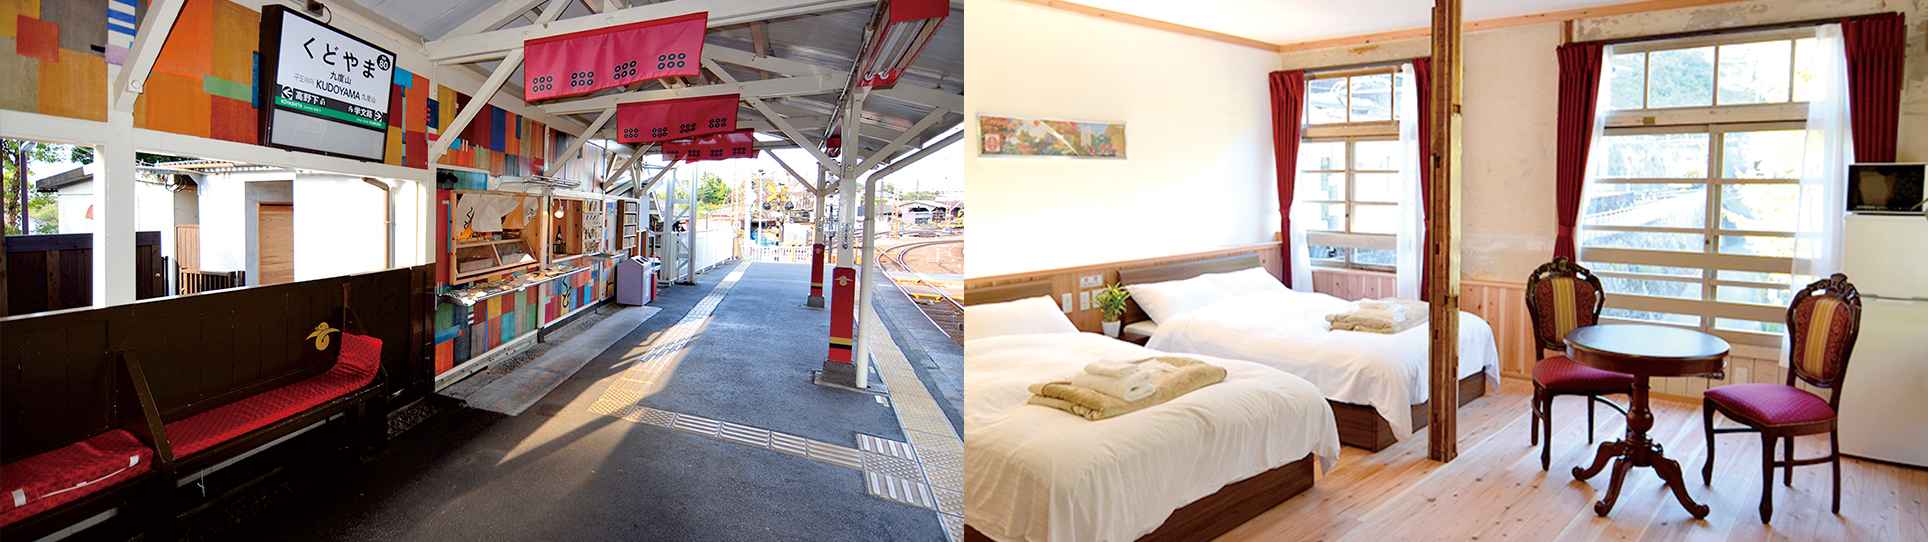 おにぎりスタンド「くど」 駅舎ホテル「NIPPONIA HOTEL 高野山 参詣鉄道 Operated by KIRINJI」